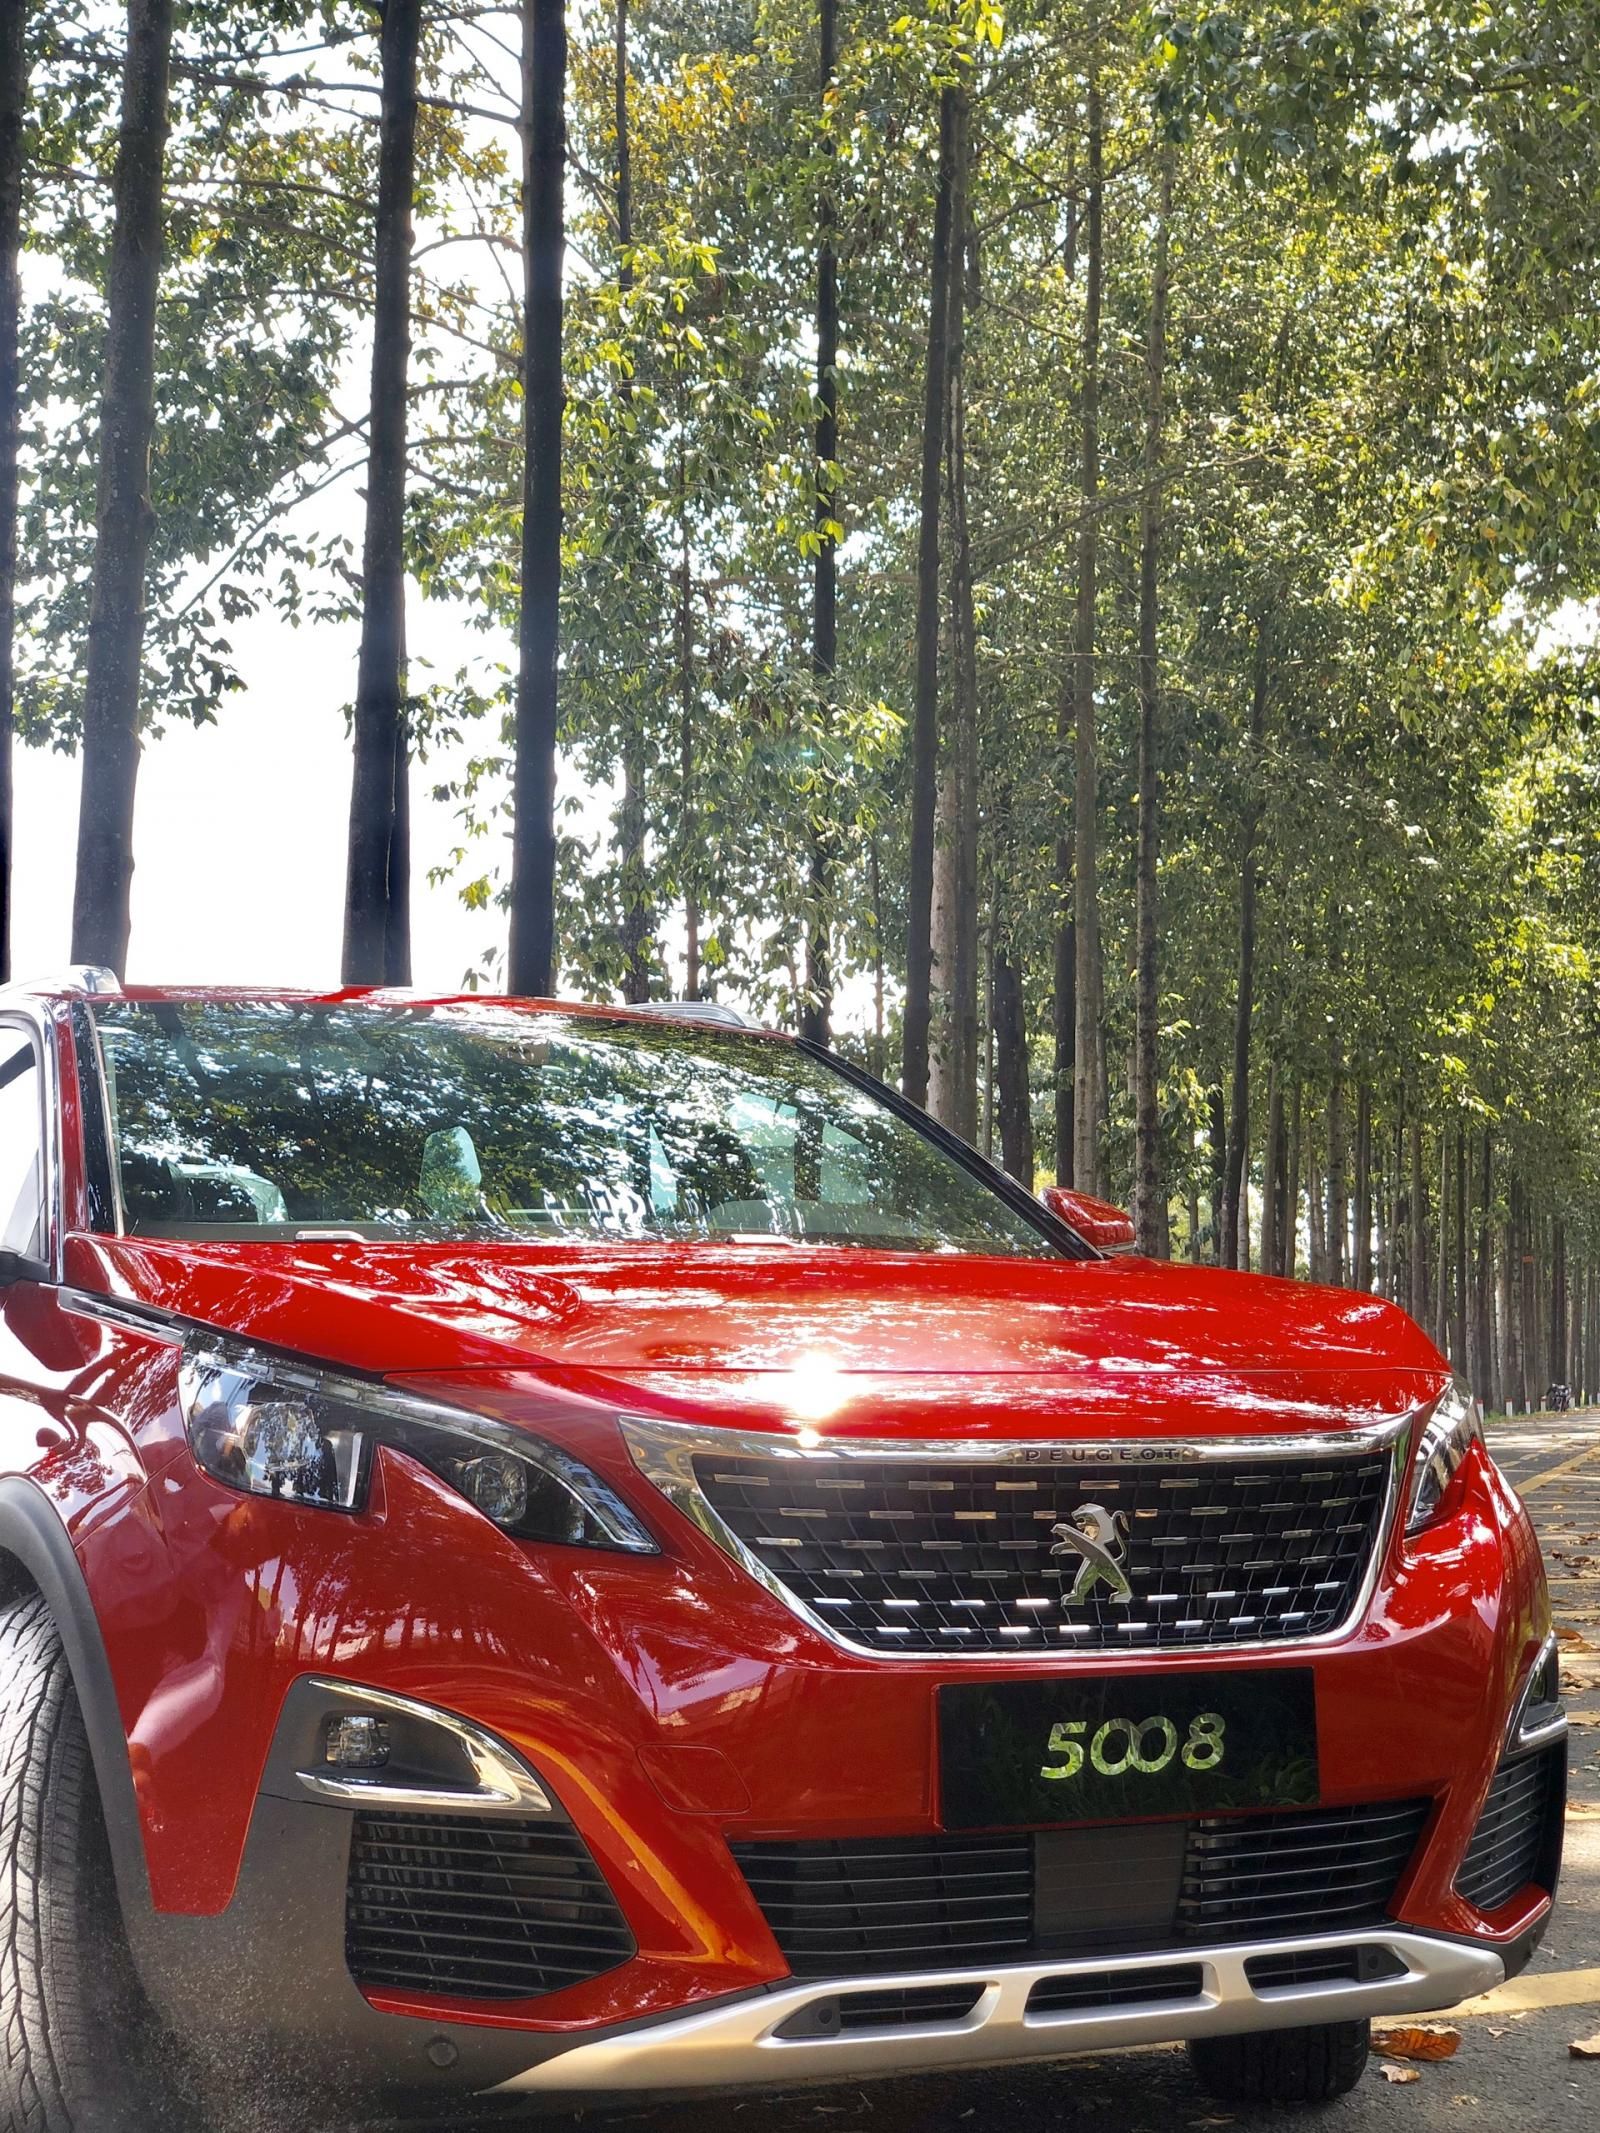 Peugeot 5008 2019 - Peugeot Biên Hòa bán xe Peugeot 5008 2019 đủ màu, giao xe nhanh - giá tốt nhất - 0938 630 866 để hưởng ưu đãi